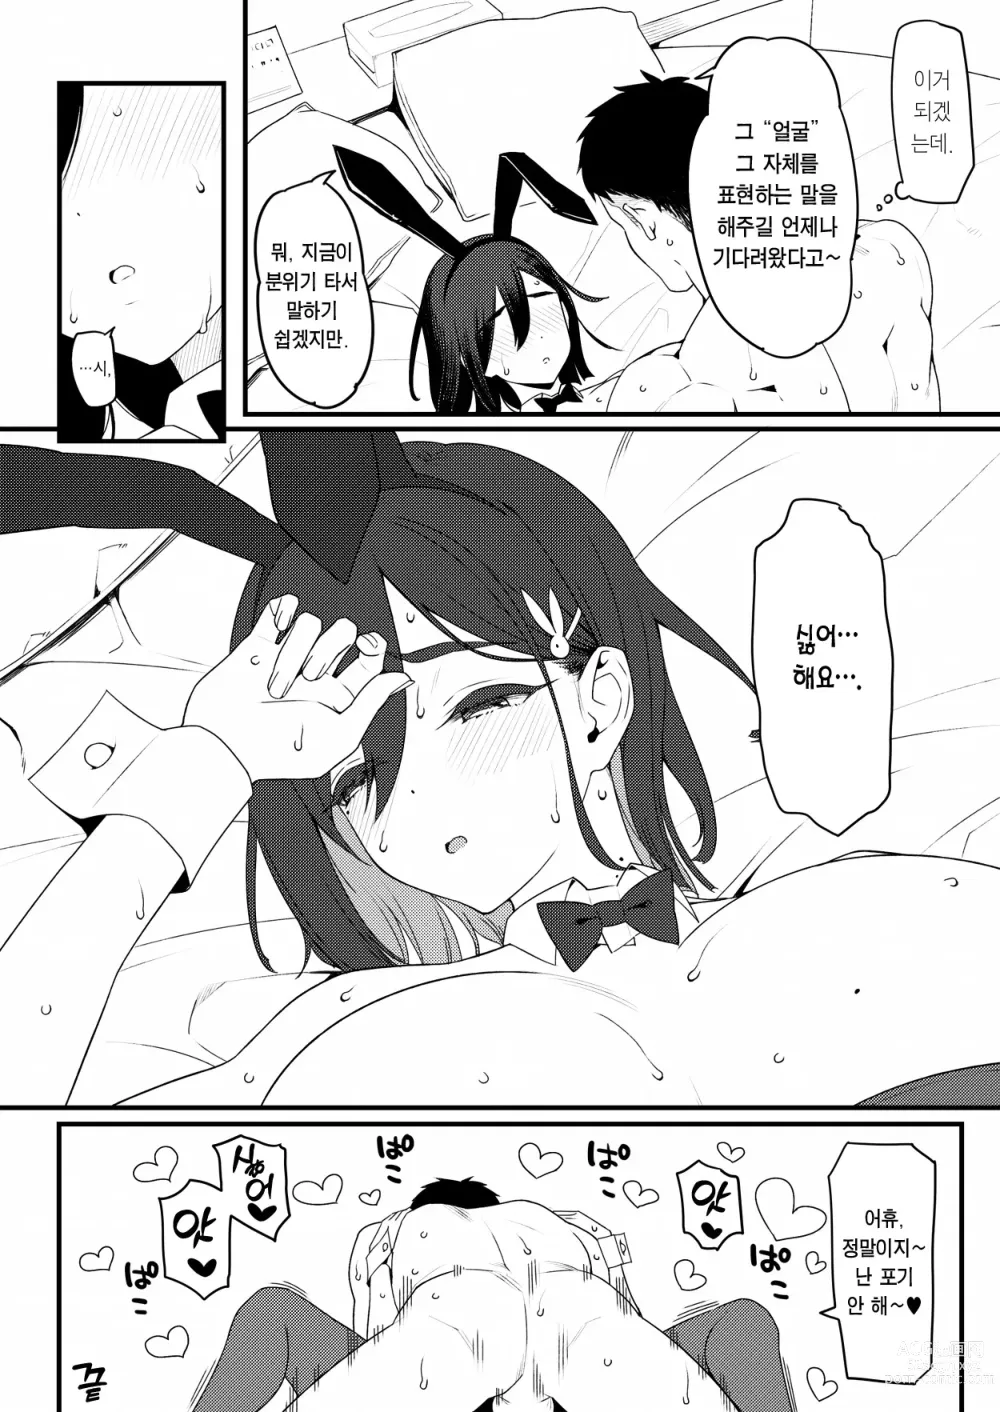 Page 13 of doujinshi Bunny Gentei Manga